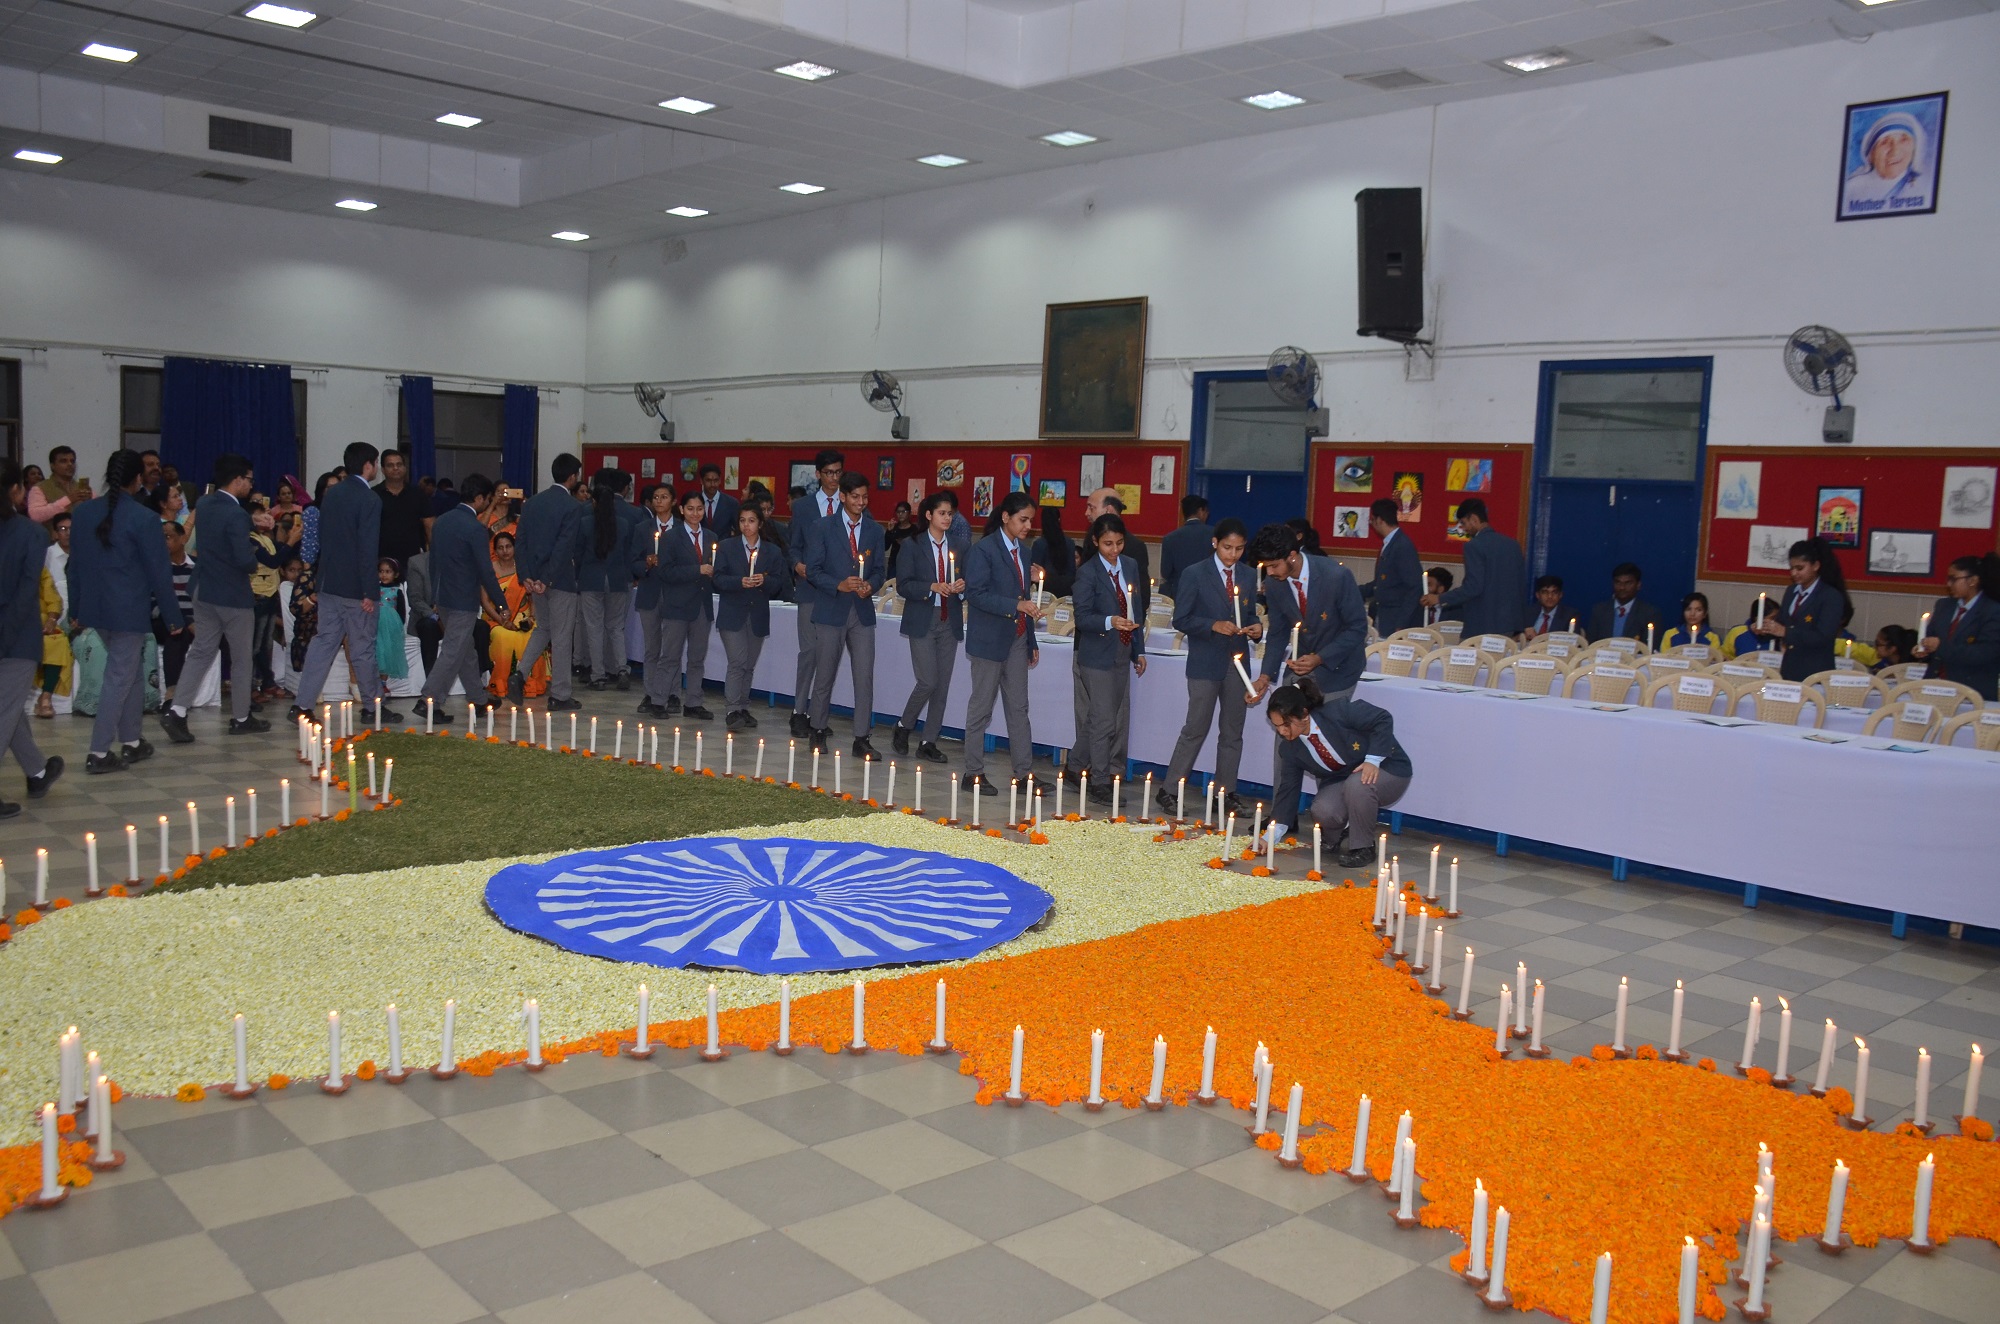 Graduation ceremony 2018 held at Sanskar School